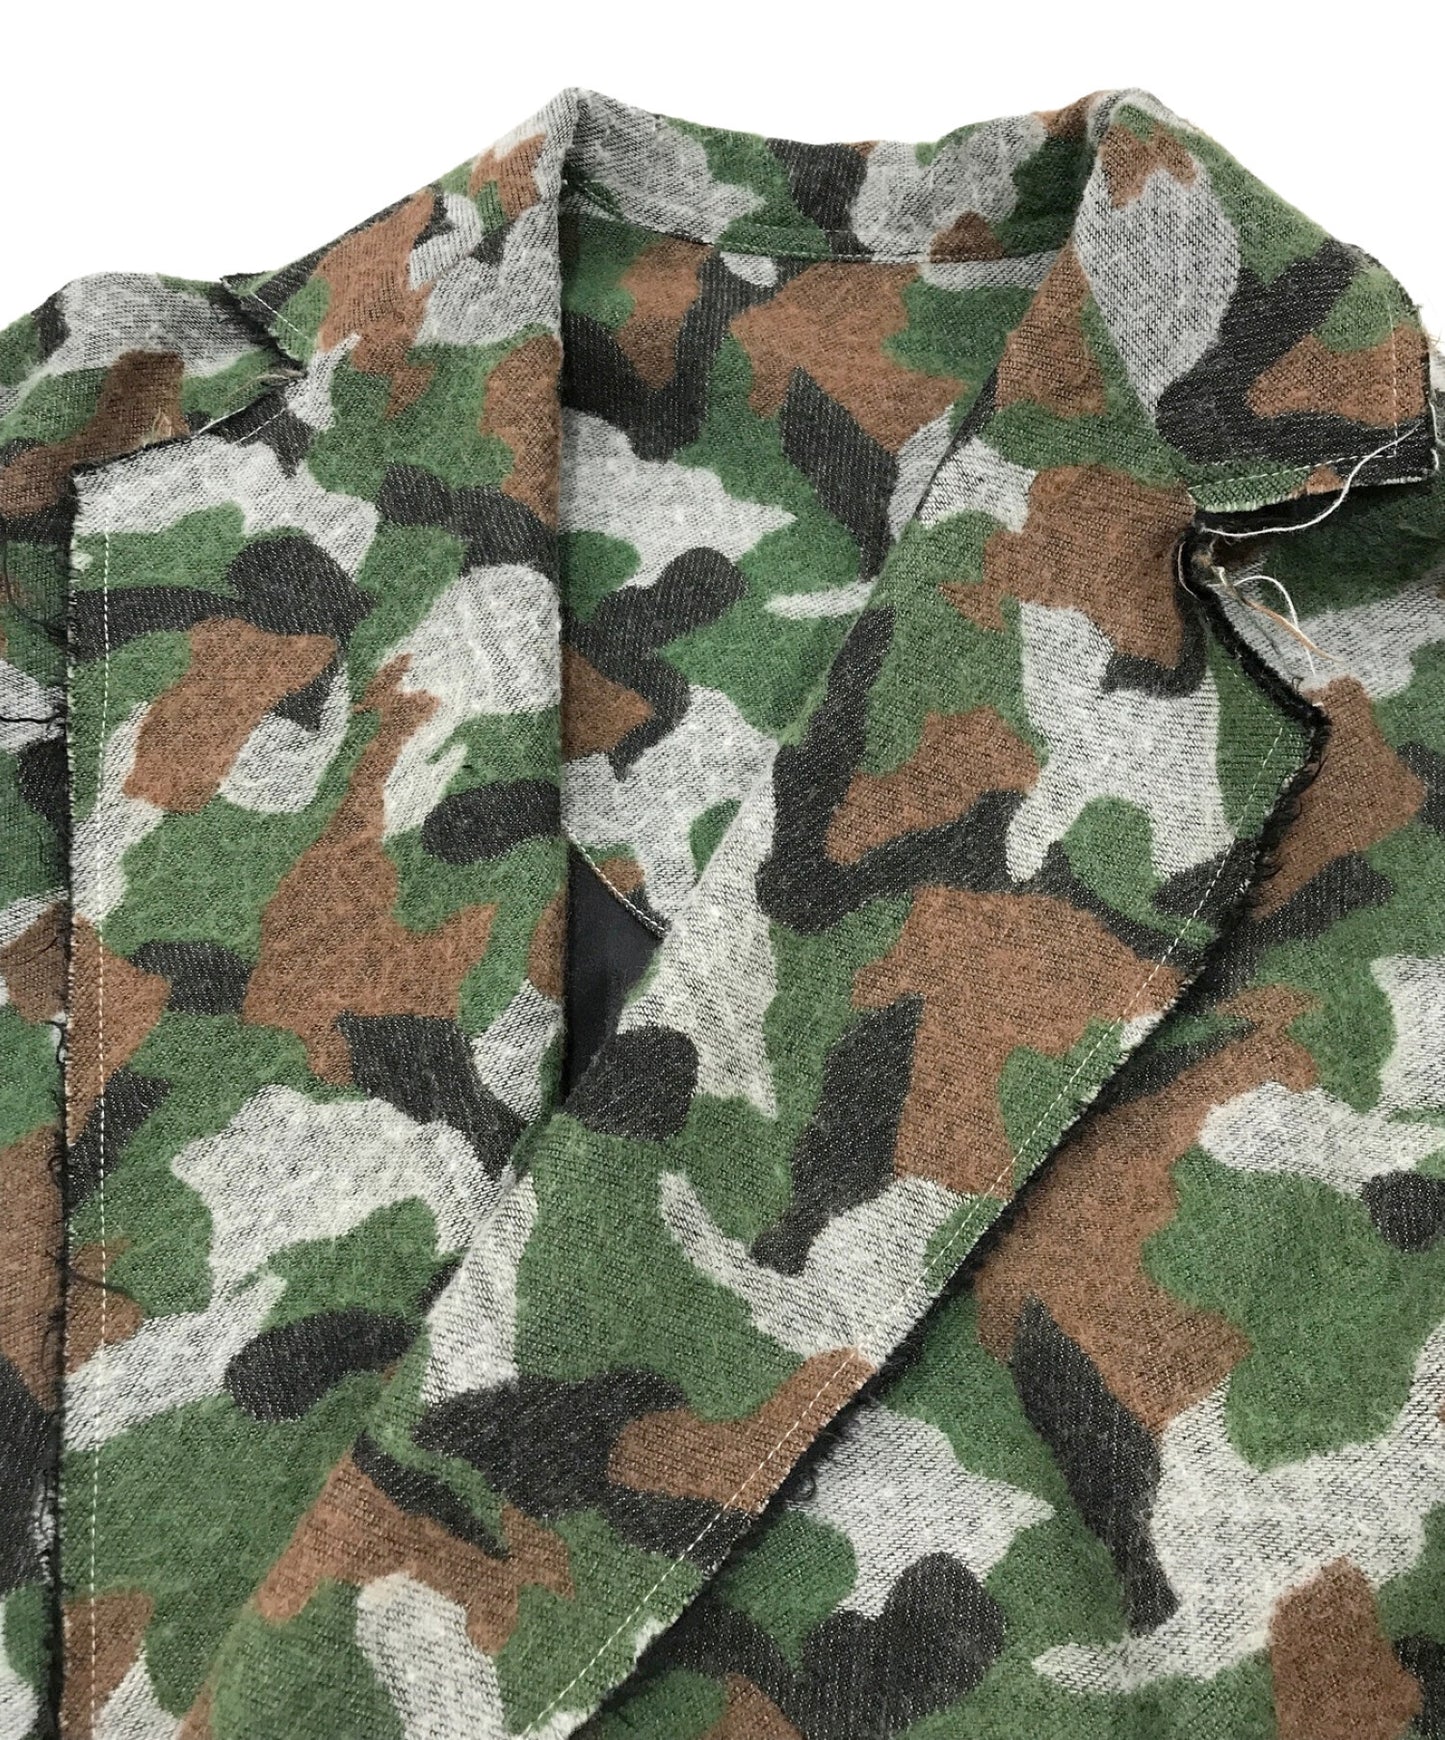 SULVAM Camouflage Pattern Coat SG-C01-120